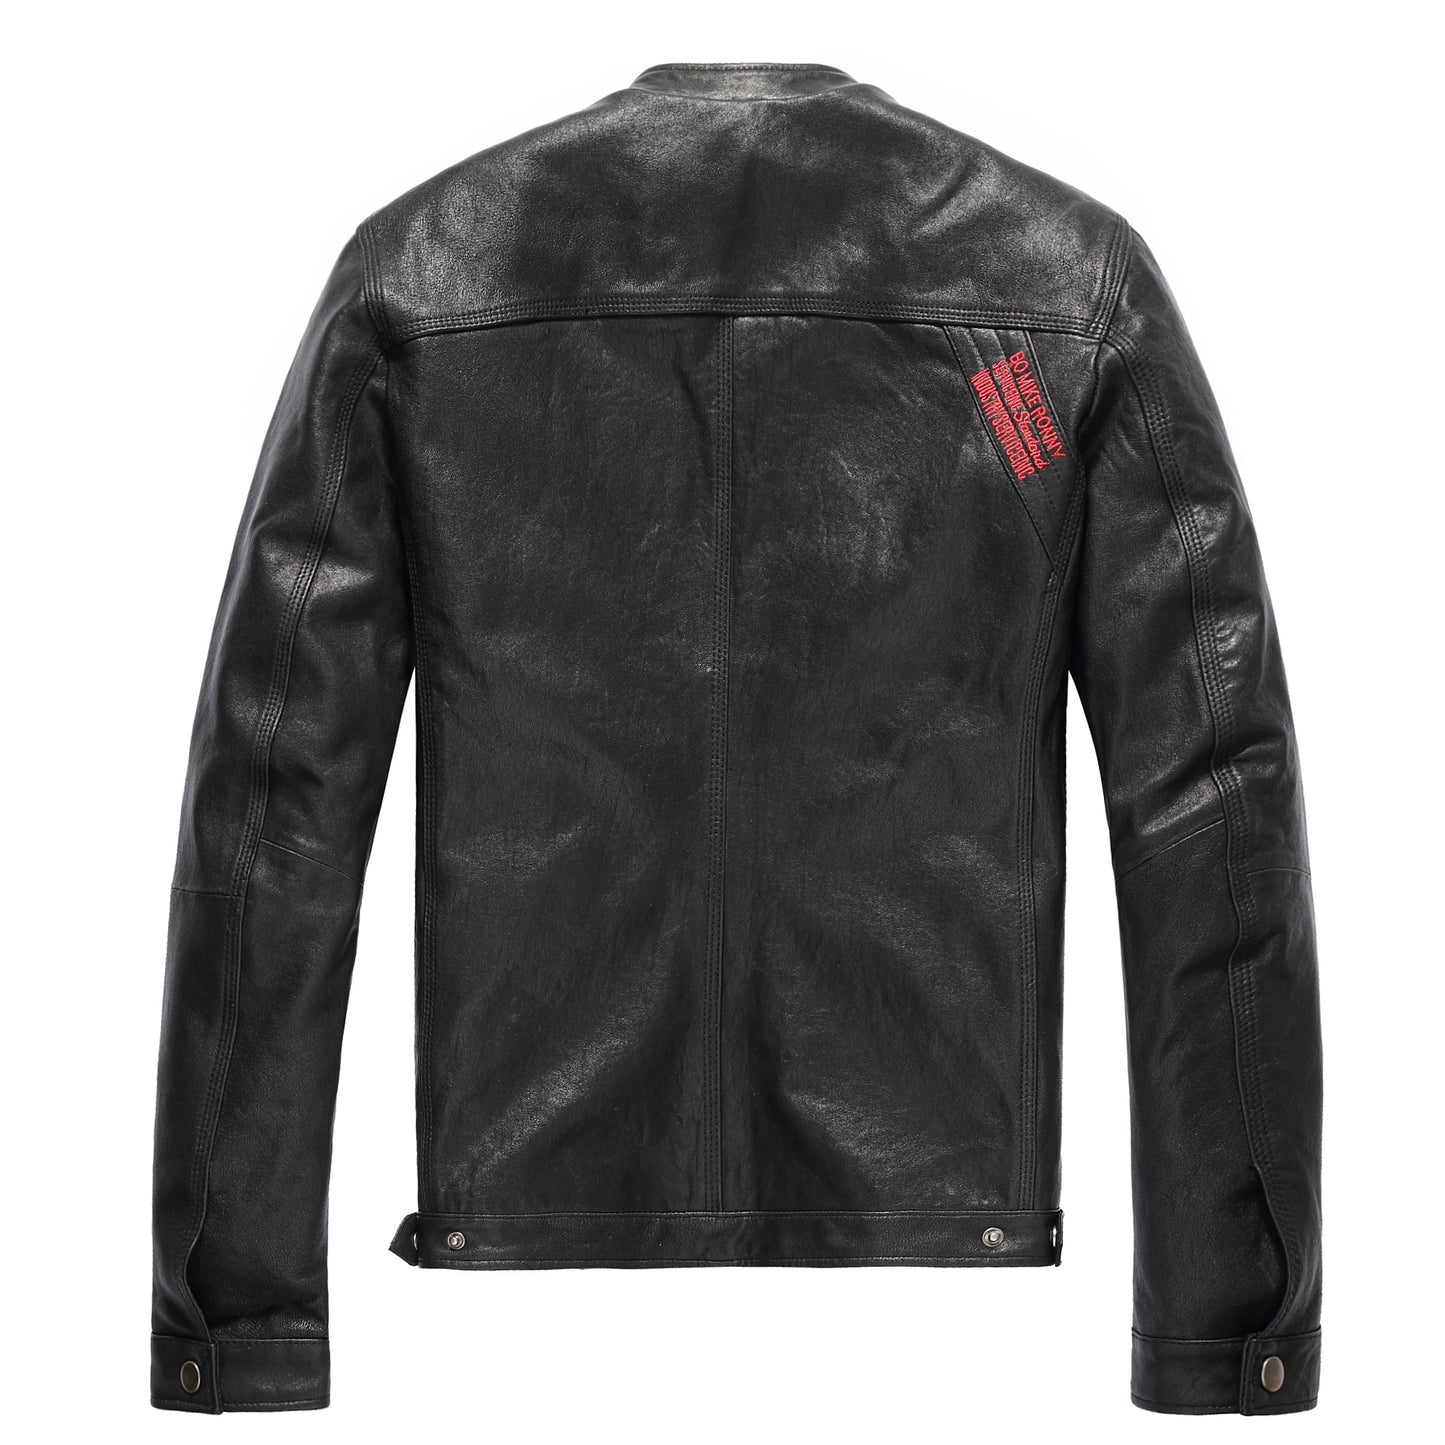 Leather leather jacket men's short leather jacket